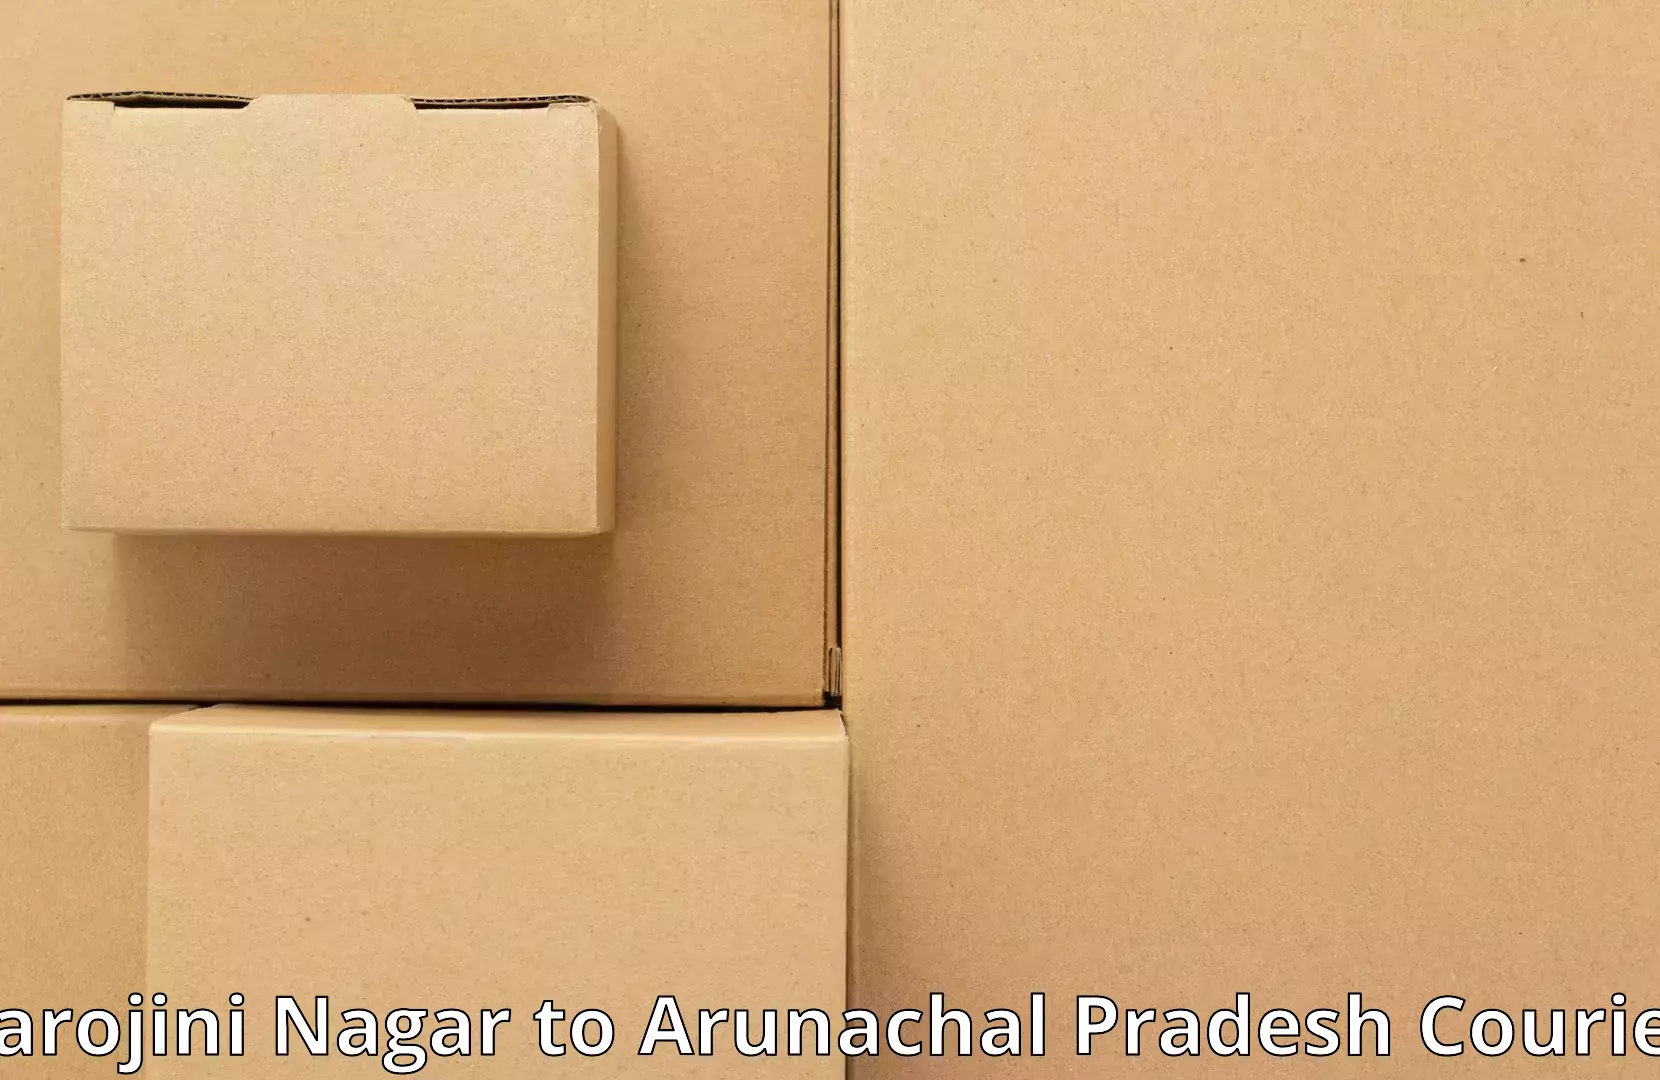 Professional goods transport Sarojini Nagar to Pasighat